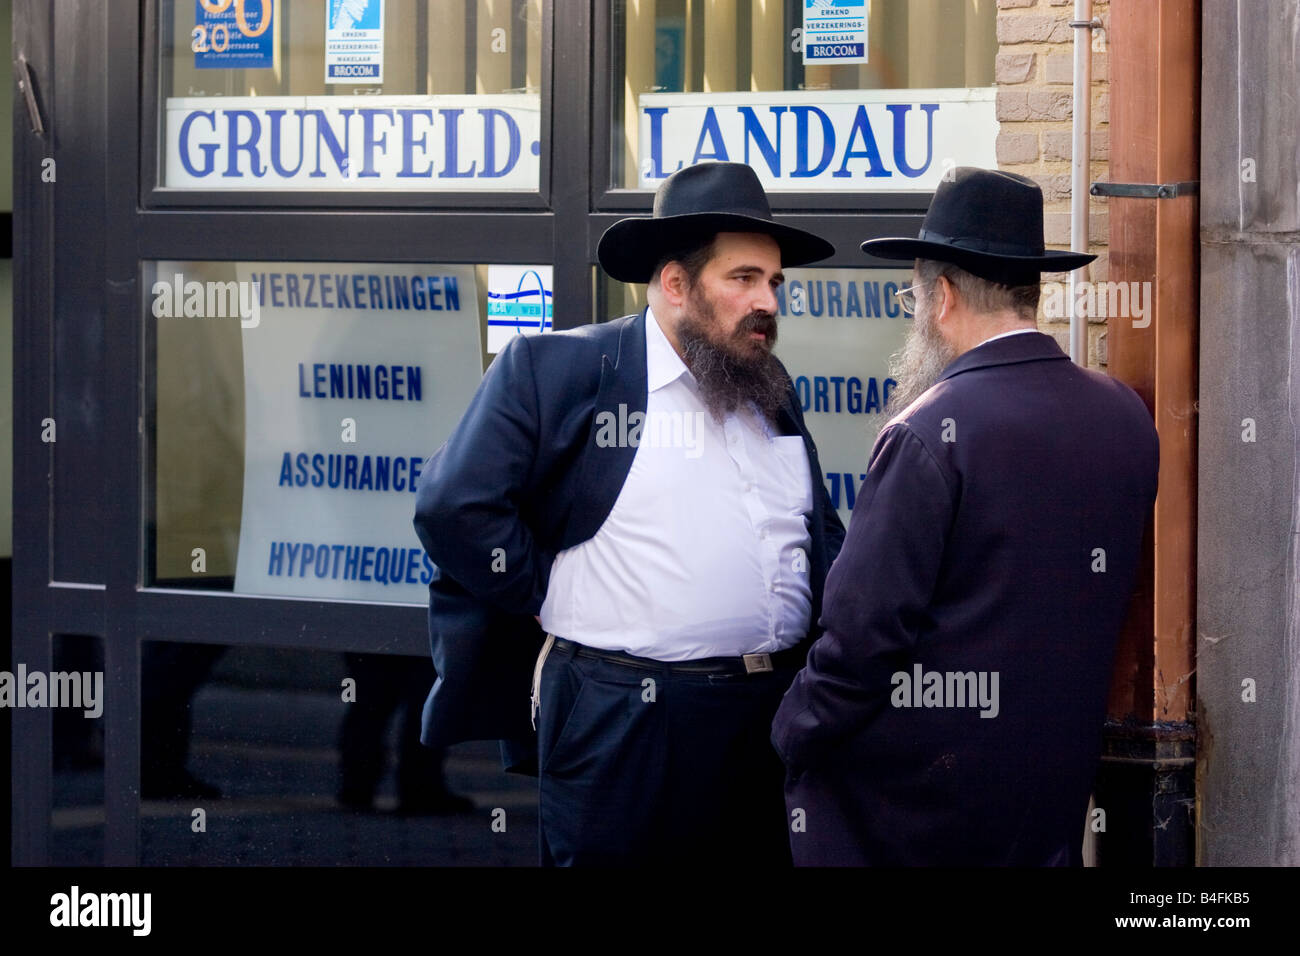 Orthodox Jews on Hoveniersstraat Diamond district in Antwerp, Belgium. Stock Photo